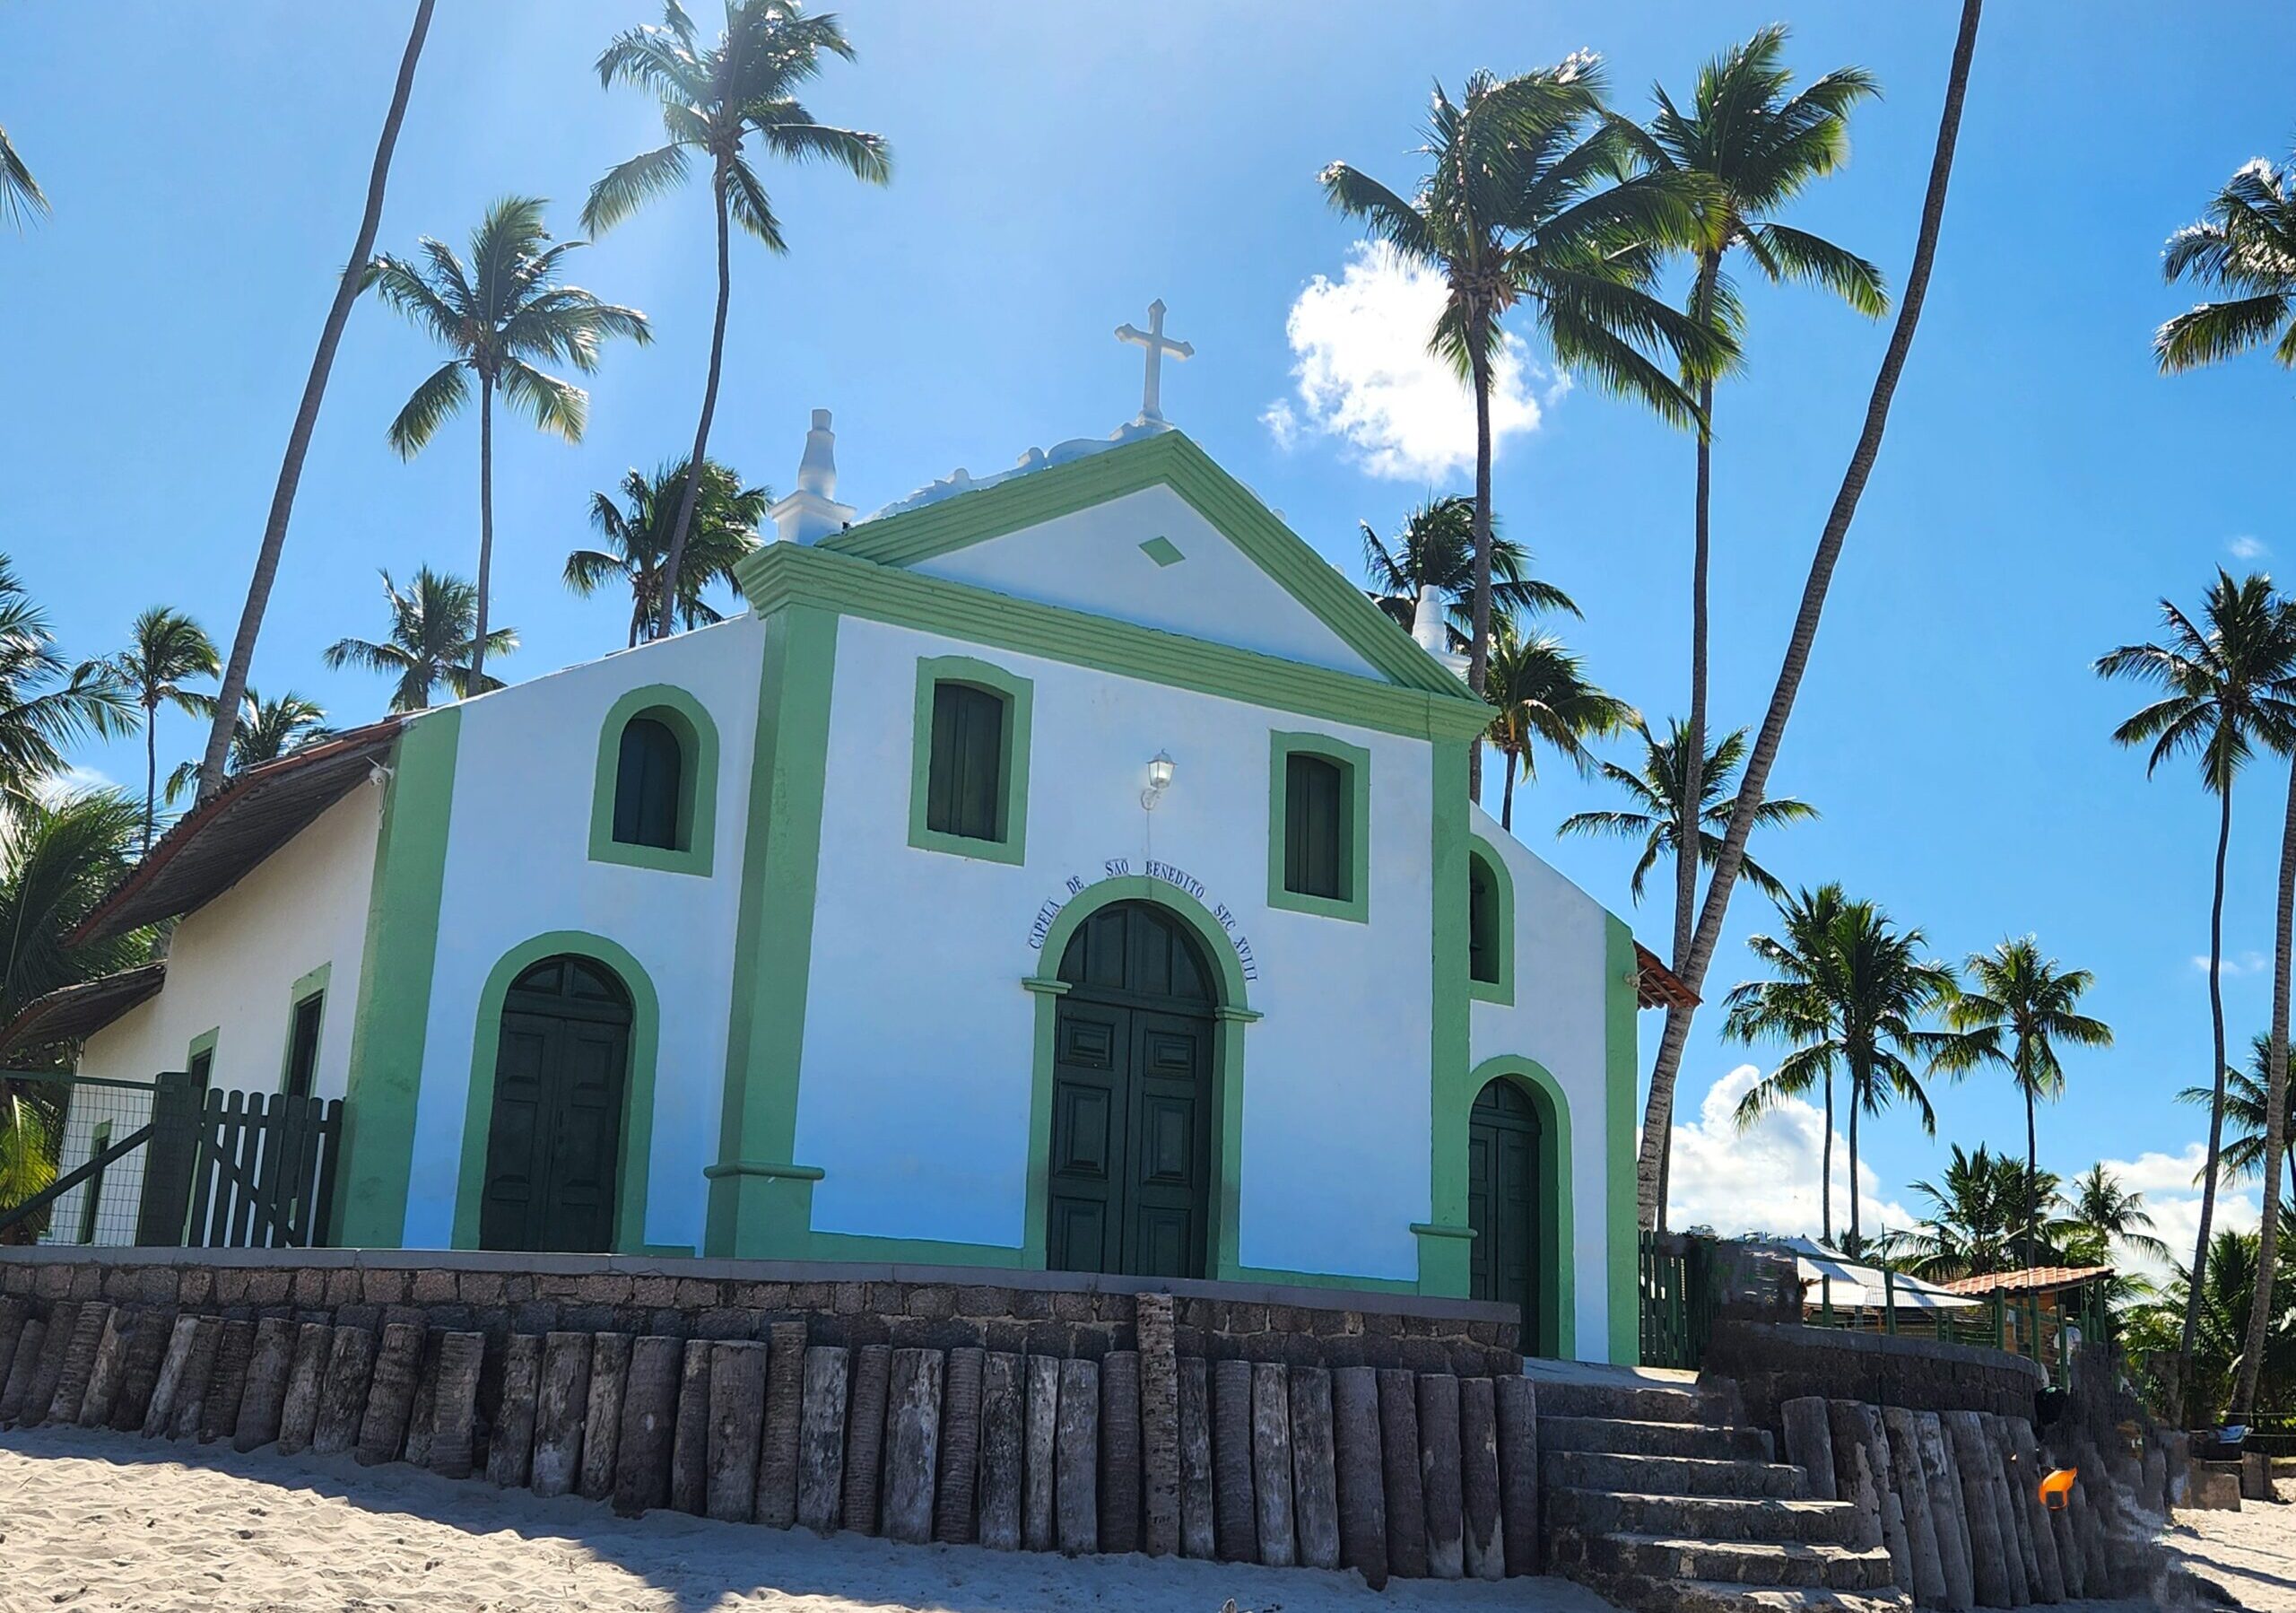 Azul do ceu e coqueirais destacam ainda mais a linda capela a beira mar 1 scaled e1702069634190 Carneiros, um paraíso a 50km de Porto de Galinhas (PE); veja fotos